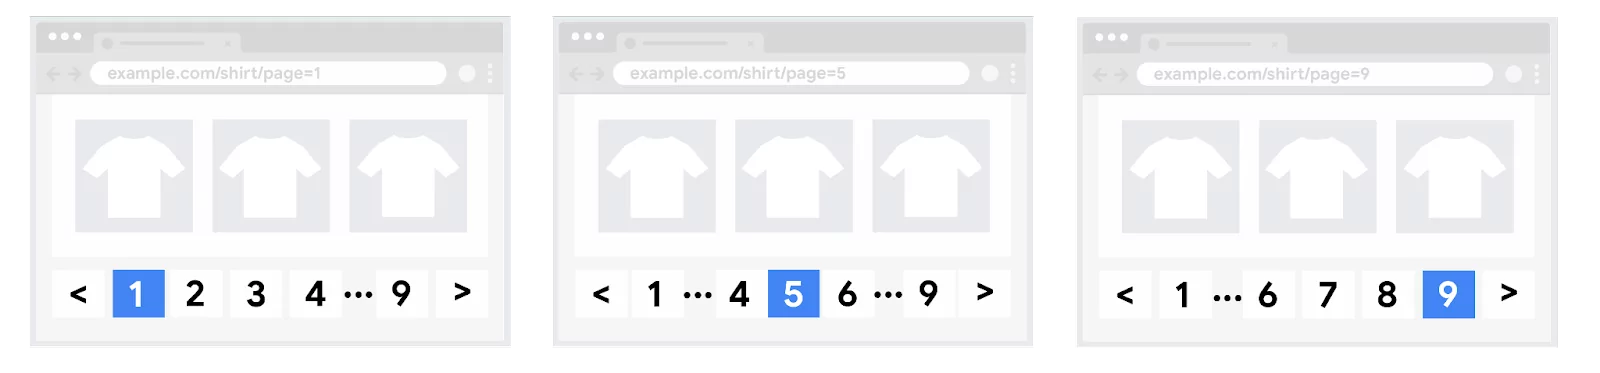 representação da paginação, extraída de documentação oficial do google, demonstrando diferentes telas com os números de página correspondentes de um catálogo de produto